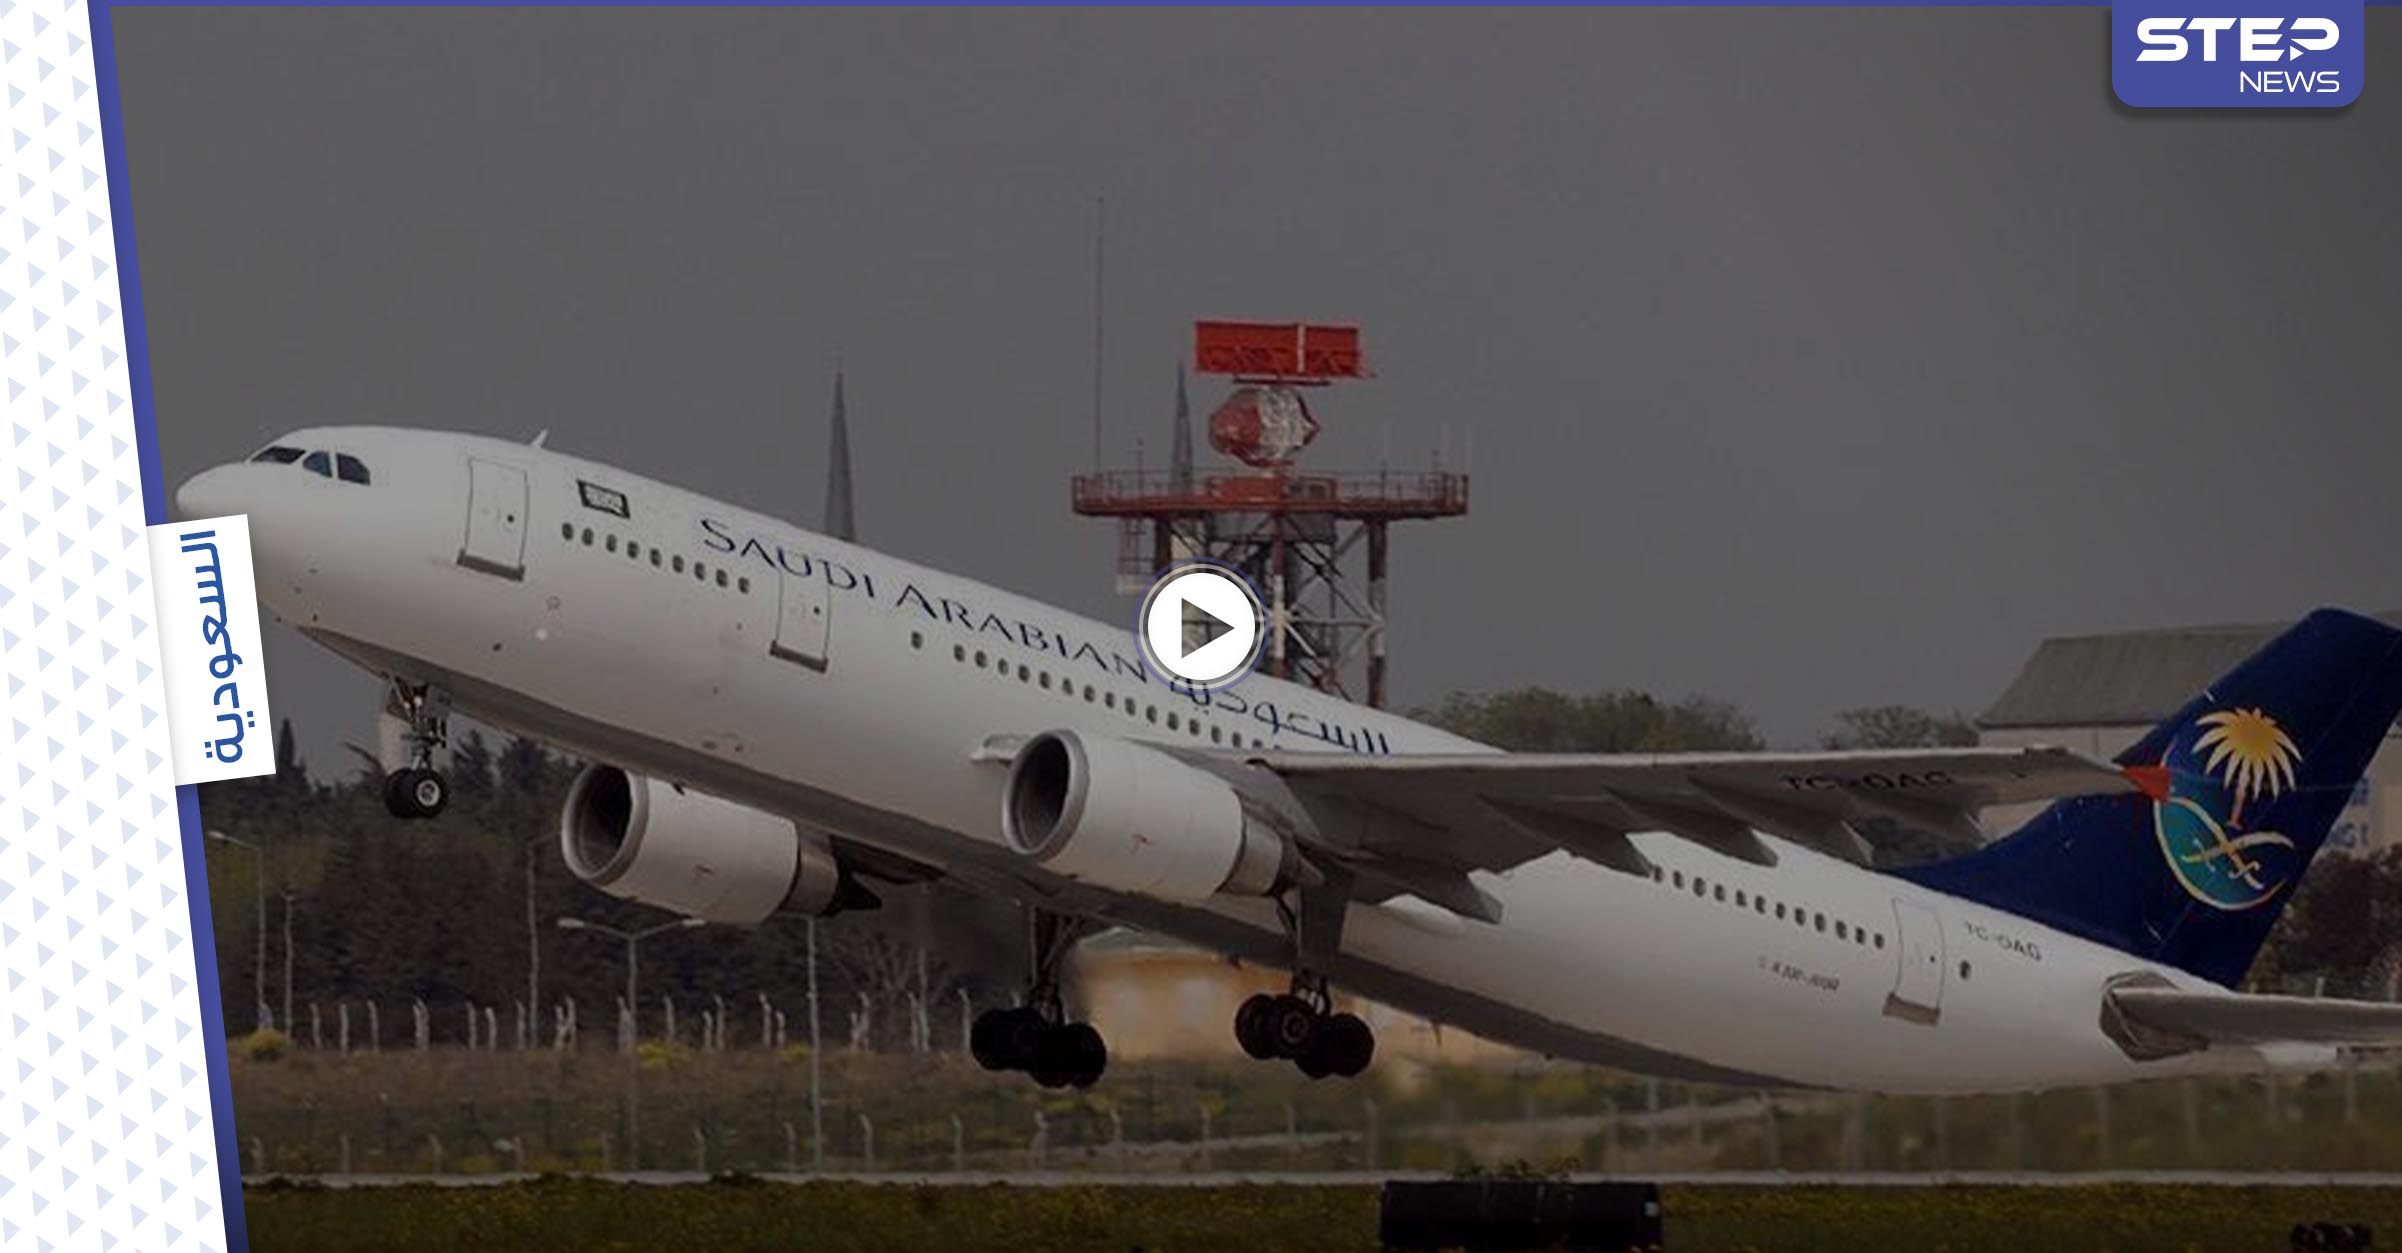 طائرة سعودية تغير مسارها بشكل مفاجئ وتعود للمطار بعد إقلاعها بسبب سيدة (فيديو)